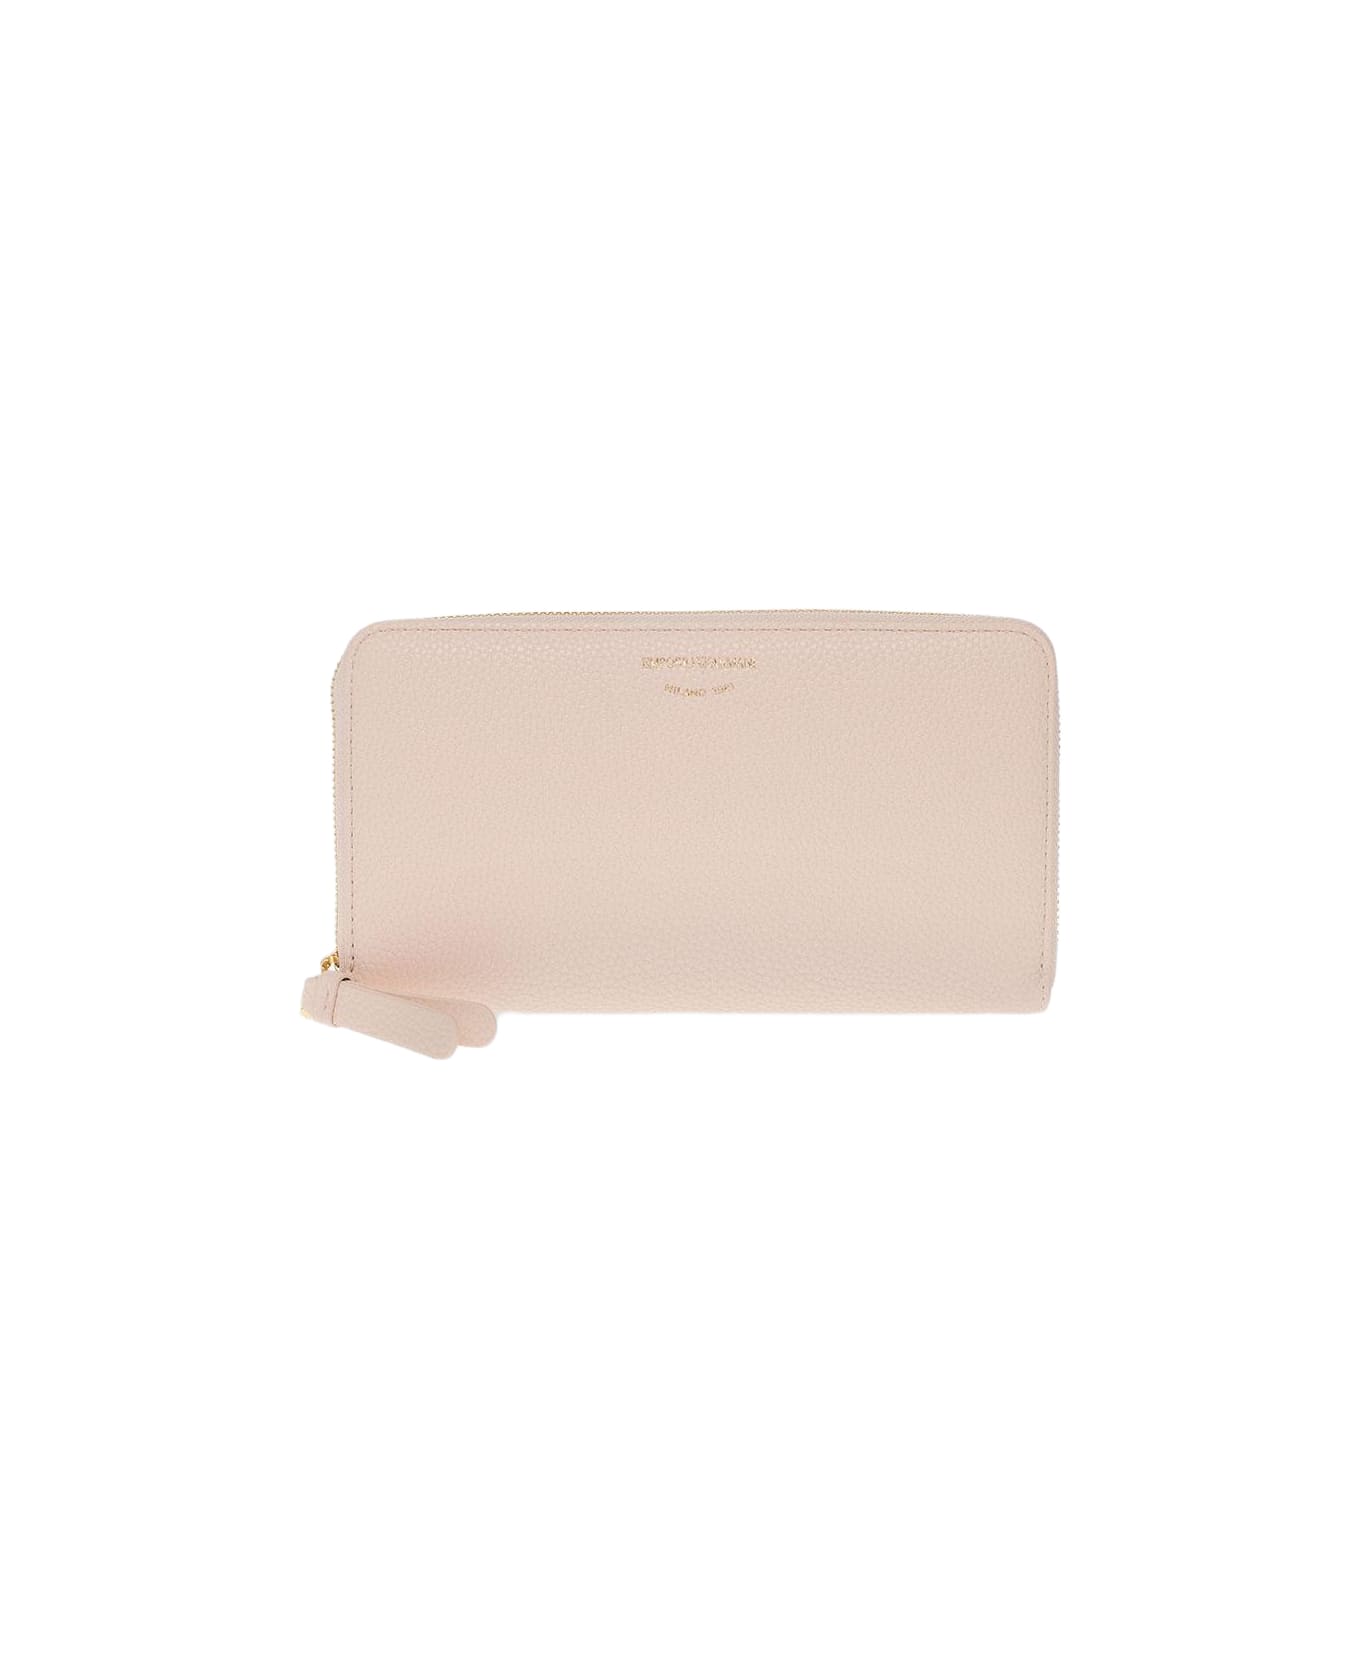 Emporio Armani Wallet With Logo - Nudo 財布